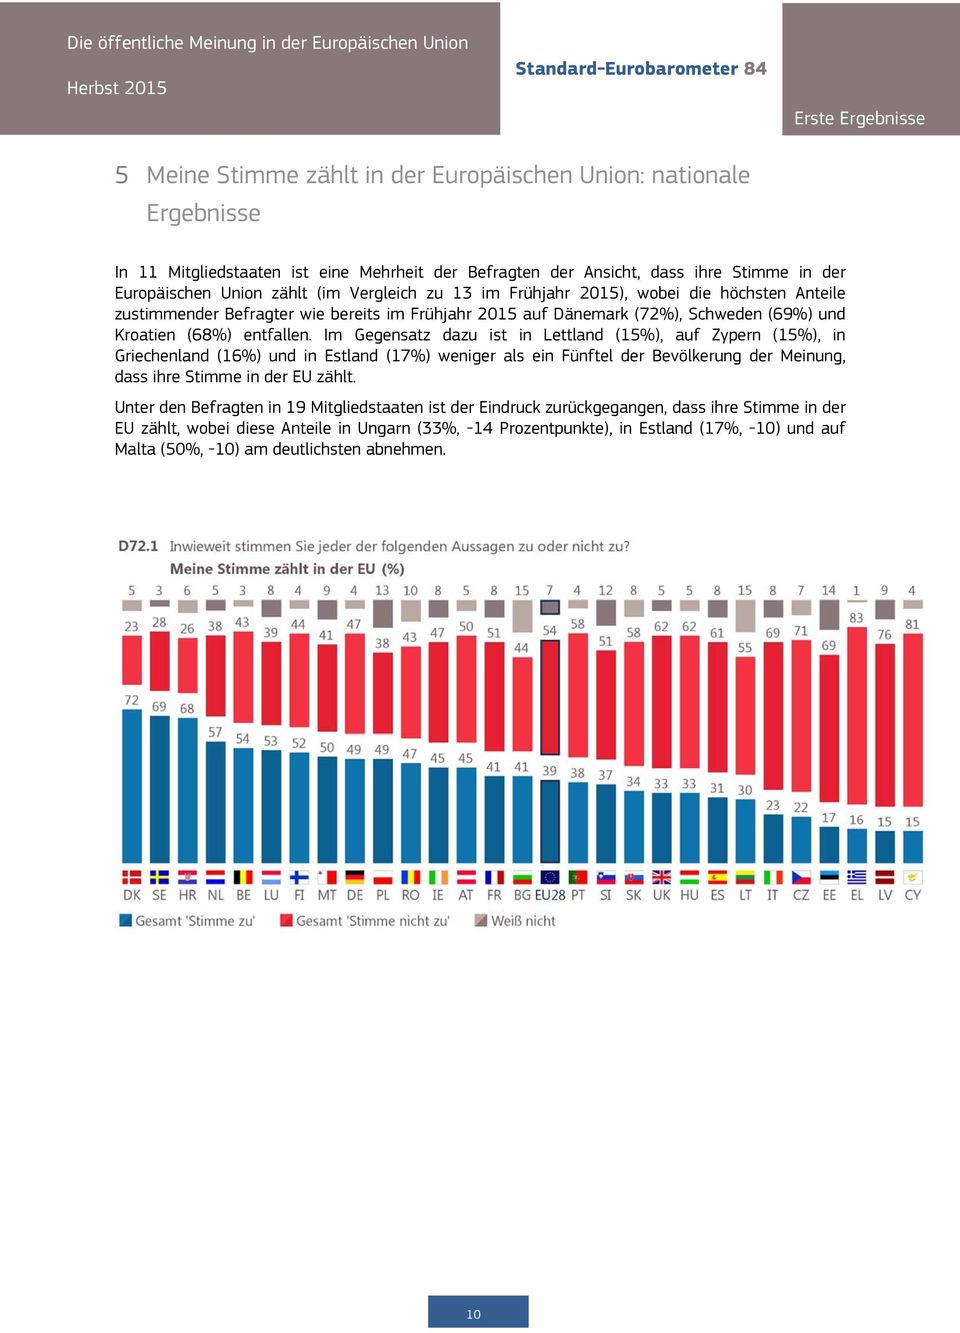 Im Gegensatz dazu ist in Lettland (15%), auf Zypern (15%), in Griechenland (16%) und in Estland (17%) weniger als ein Fünftel der Bevölkerung der Meinung, dass ihre Stimme in der EU zählt.